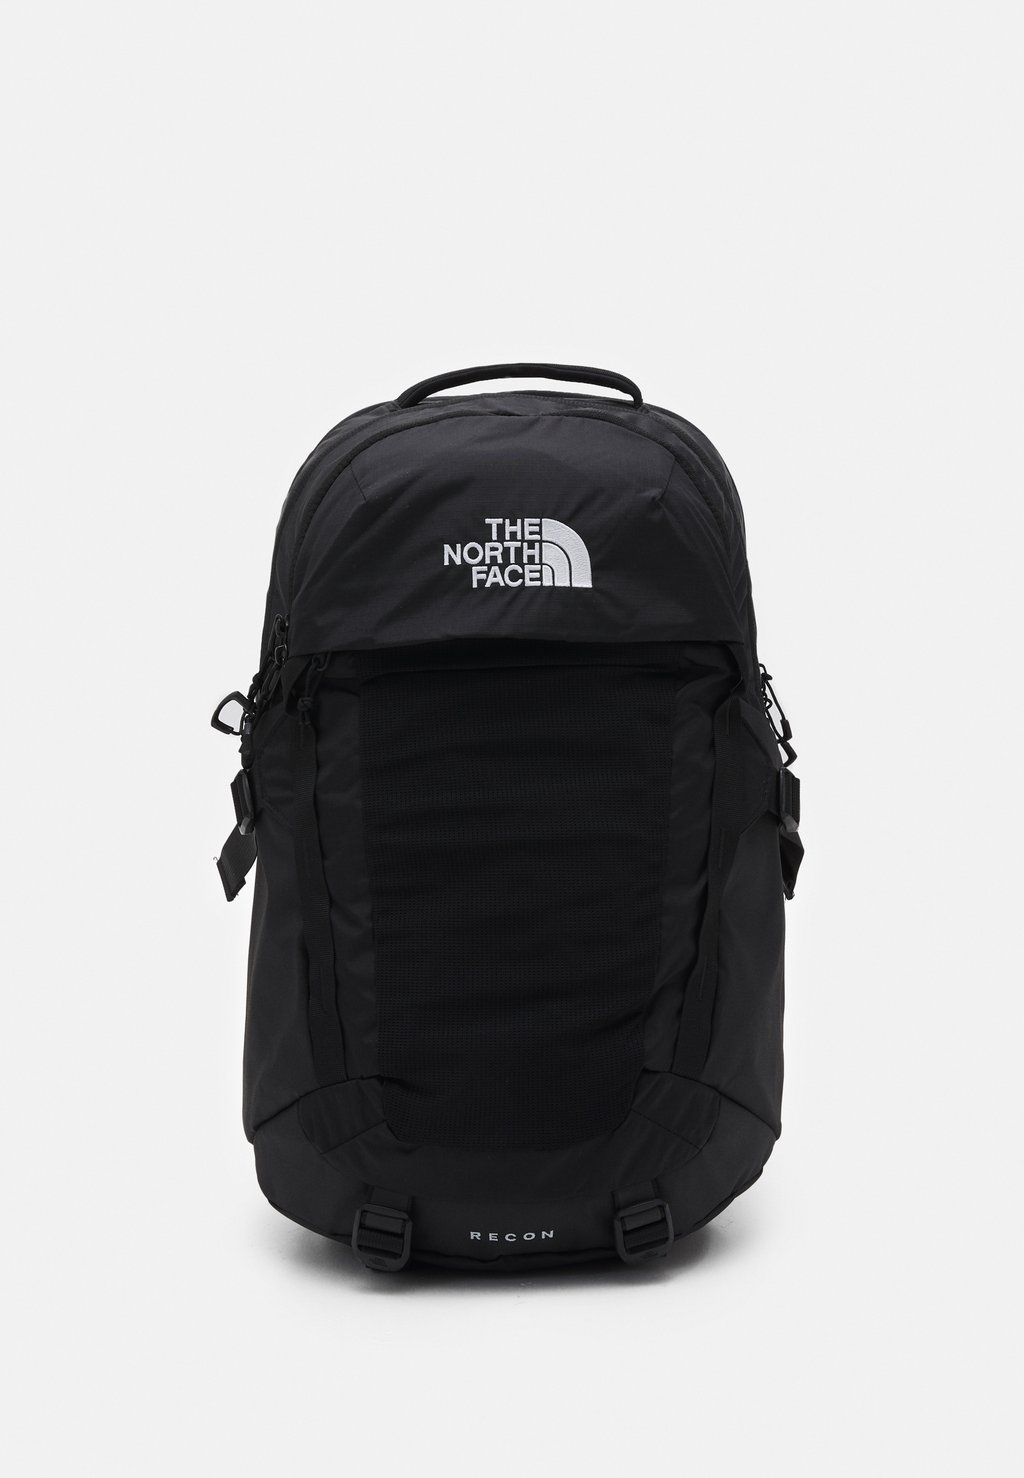 Рюкзак для путешествий The North Face Recon Unisex, чёрный кремового цвета рюкзак с ремешком isabella the north face